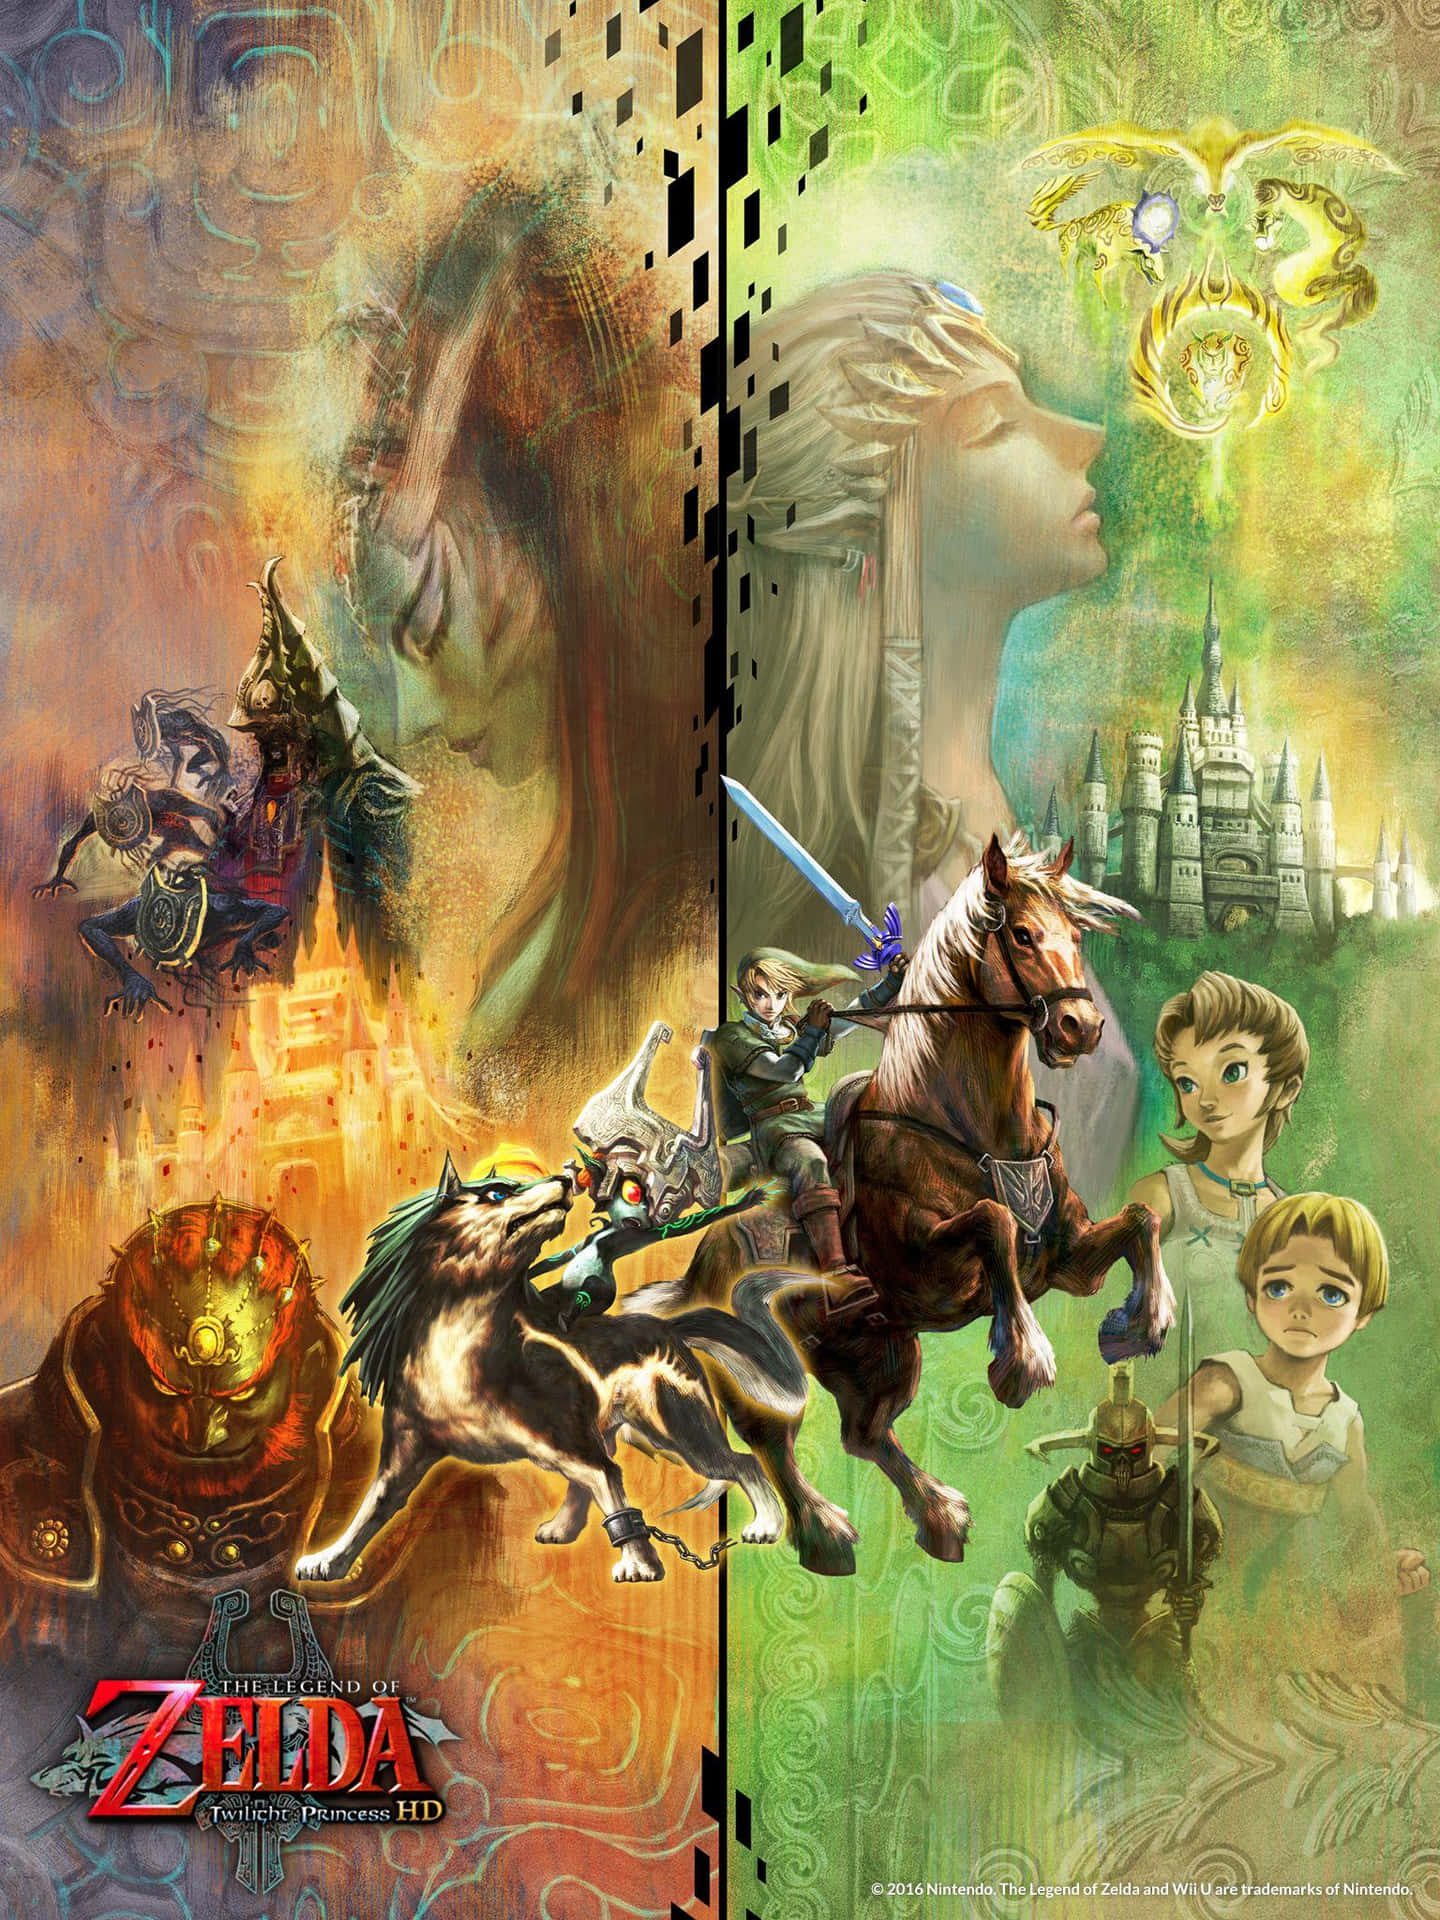 Sammentager Link Og Midna Kampen Op Mod Skyggerne I Hyrule I Twilight Princess. Wallpaper